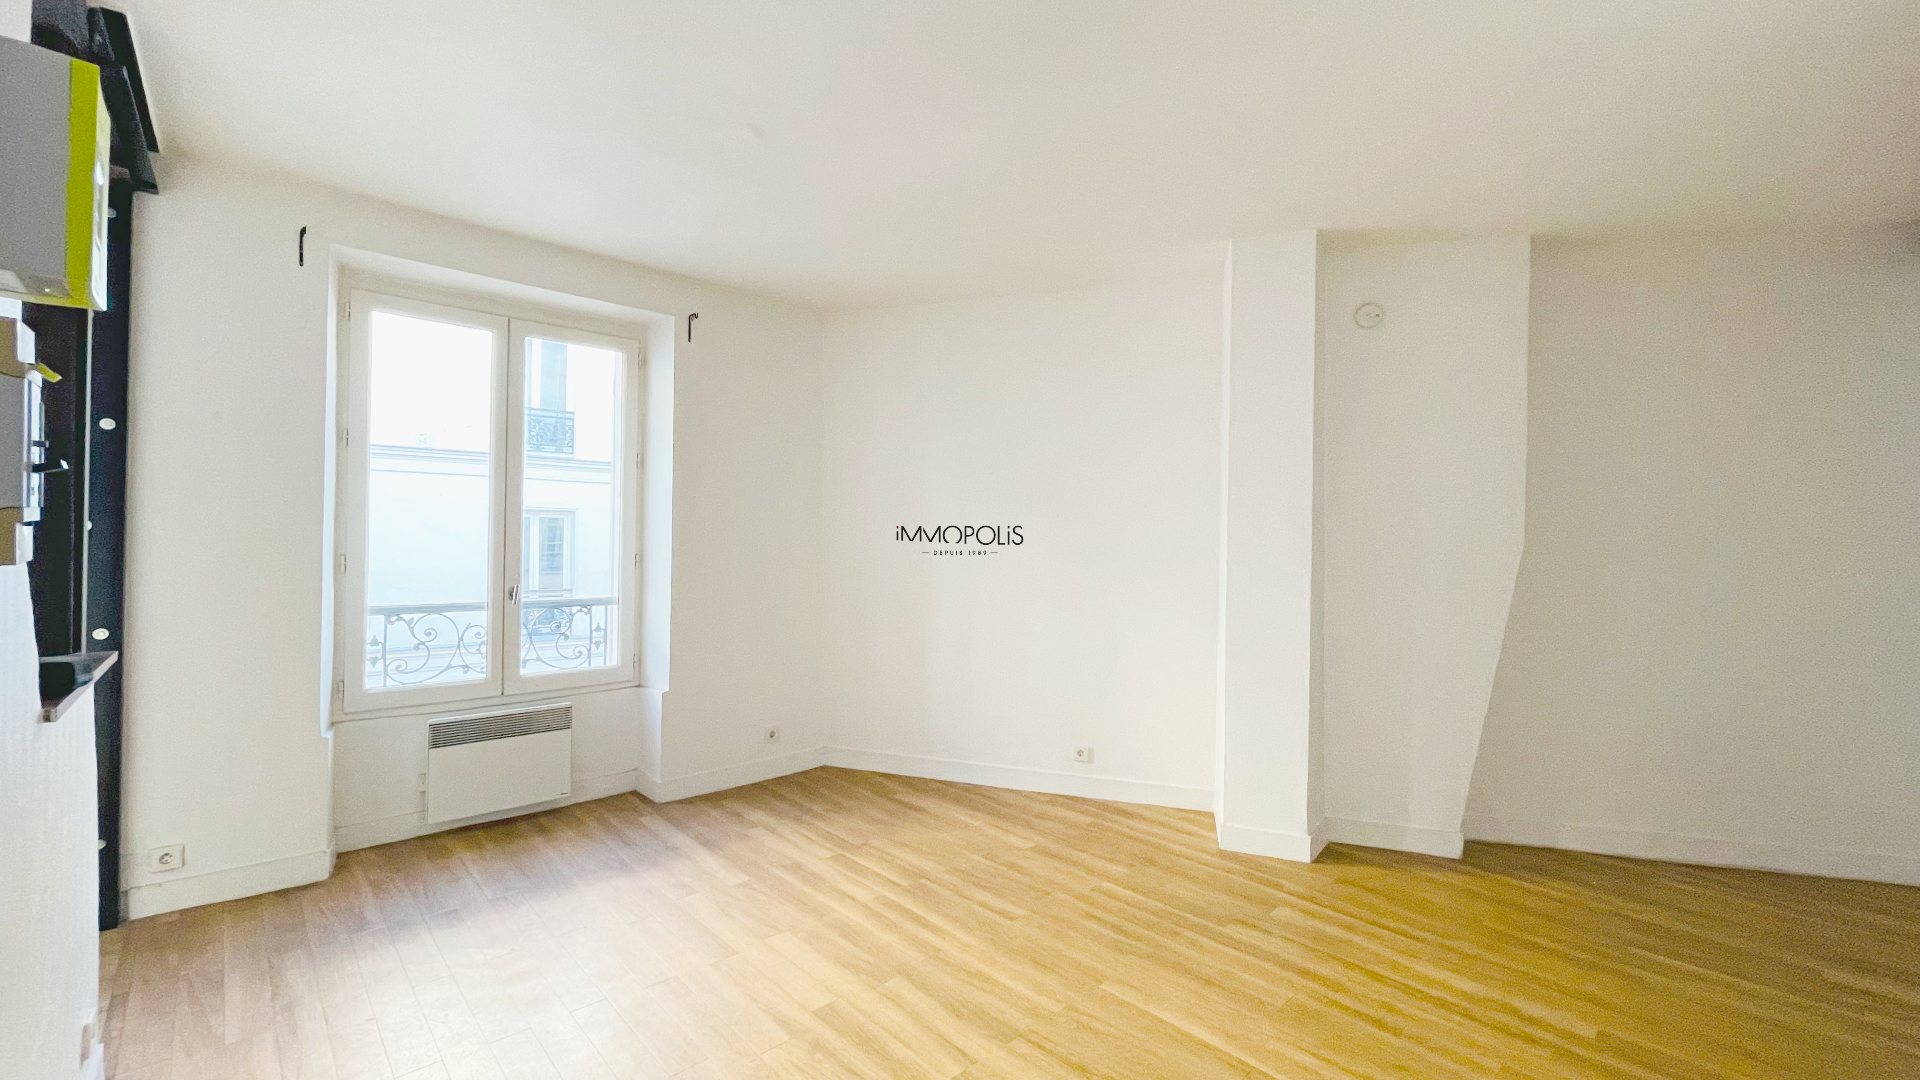 Beau studio à Montmartre, 30 M² sans perte de place situé dans un immeuble ravalé 2